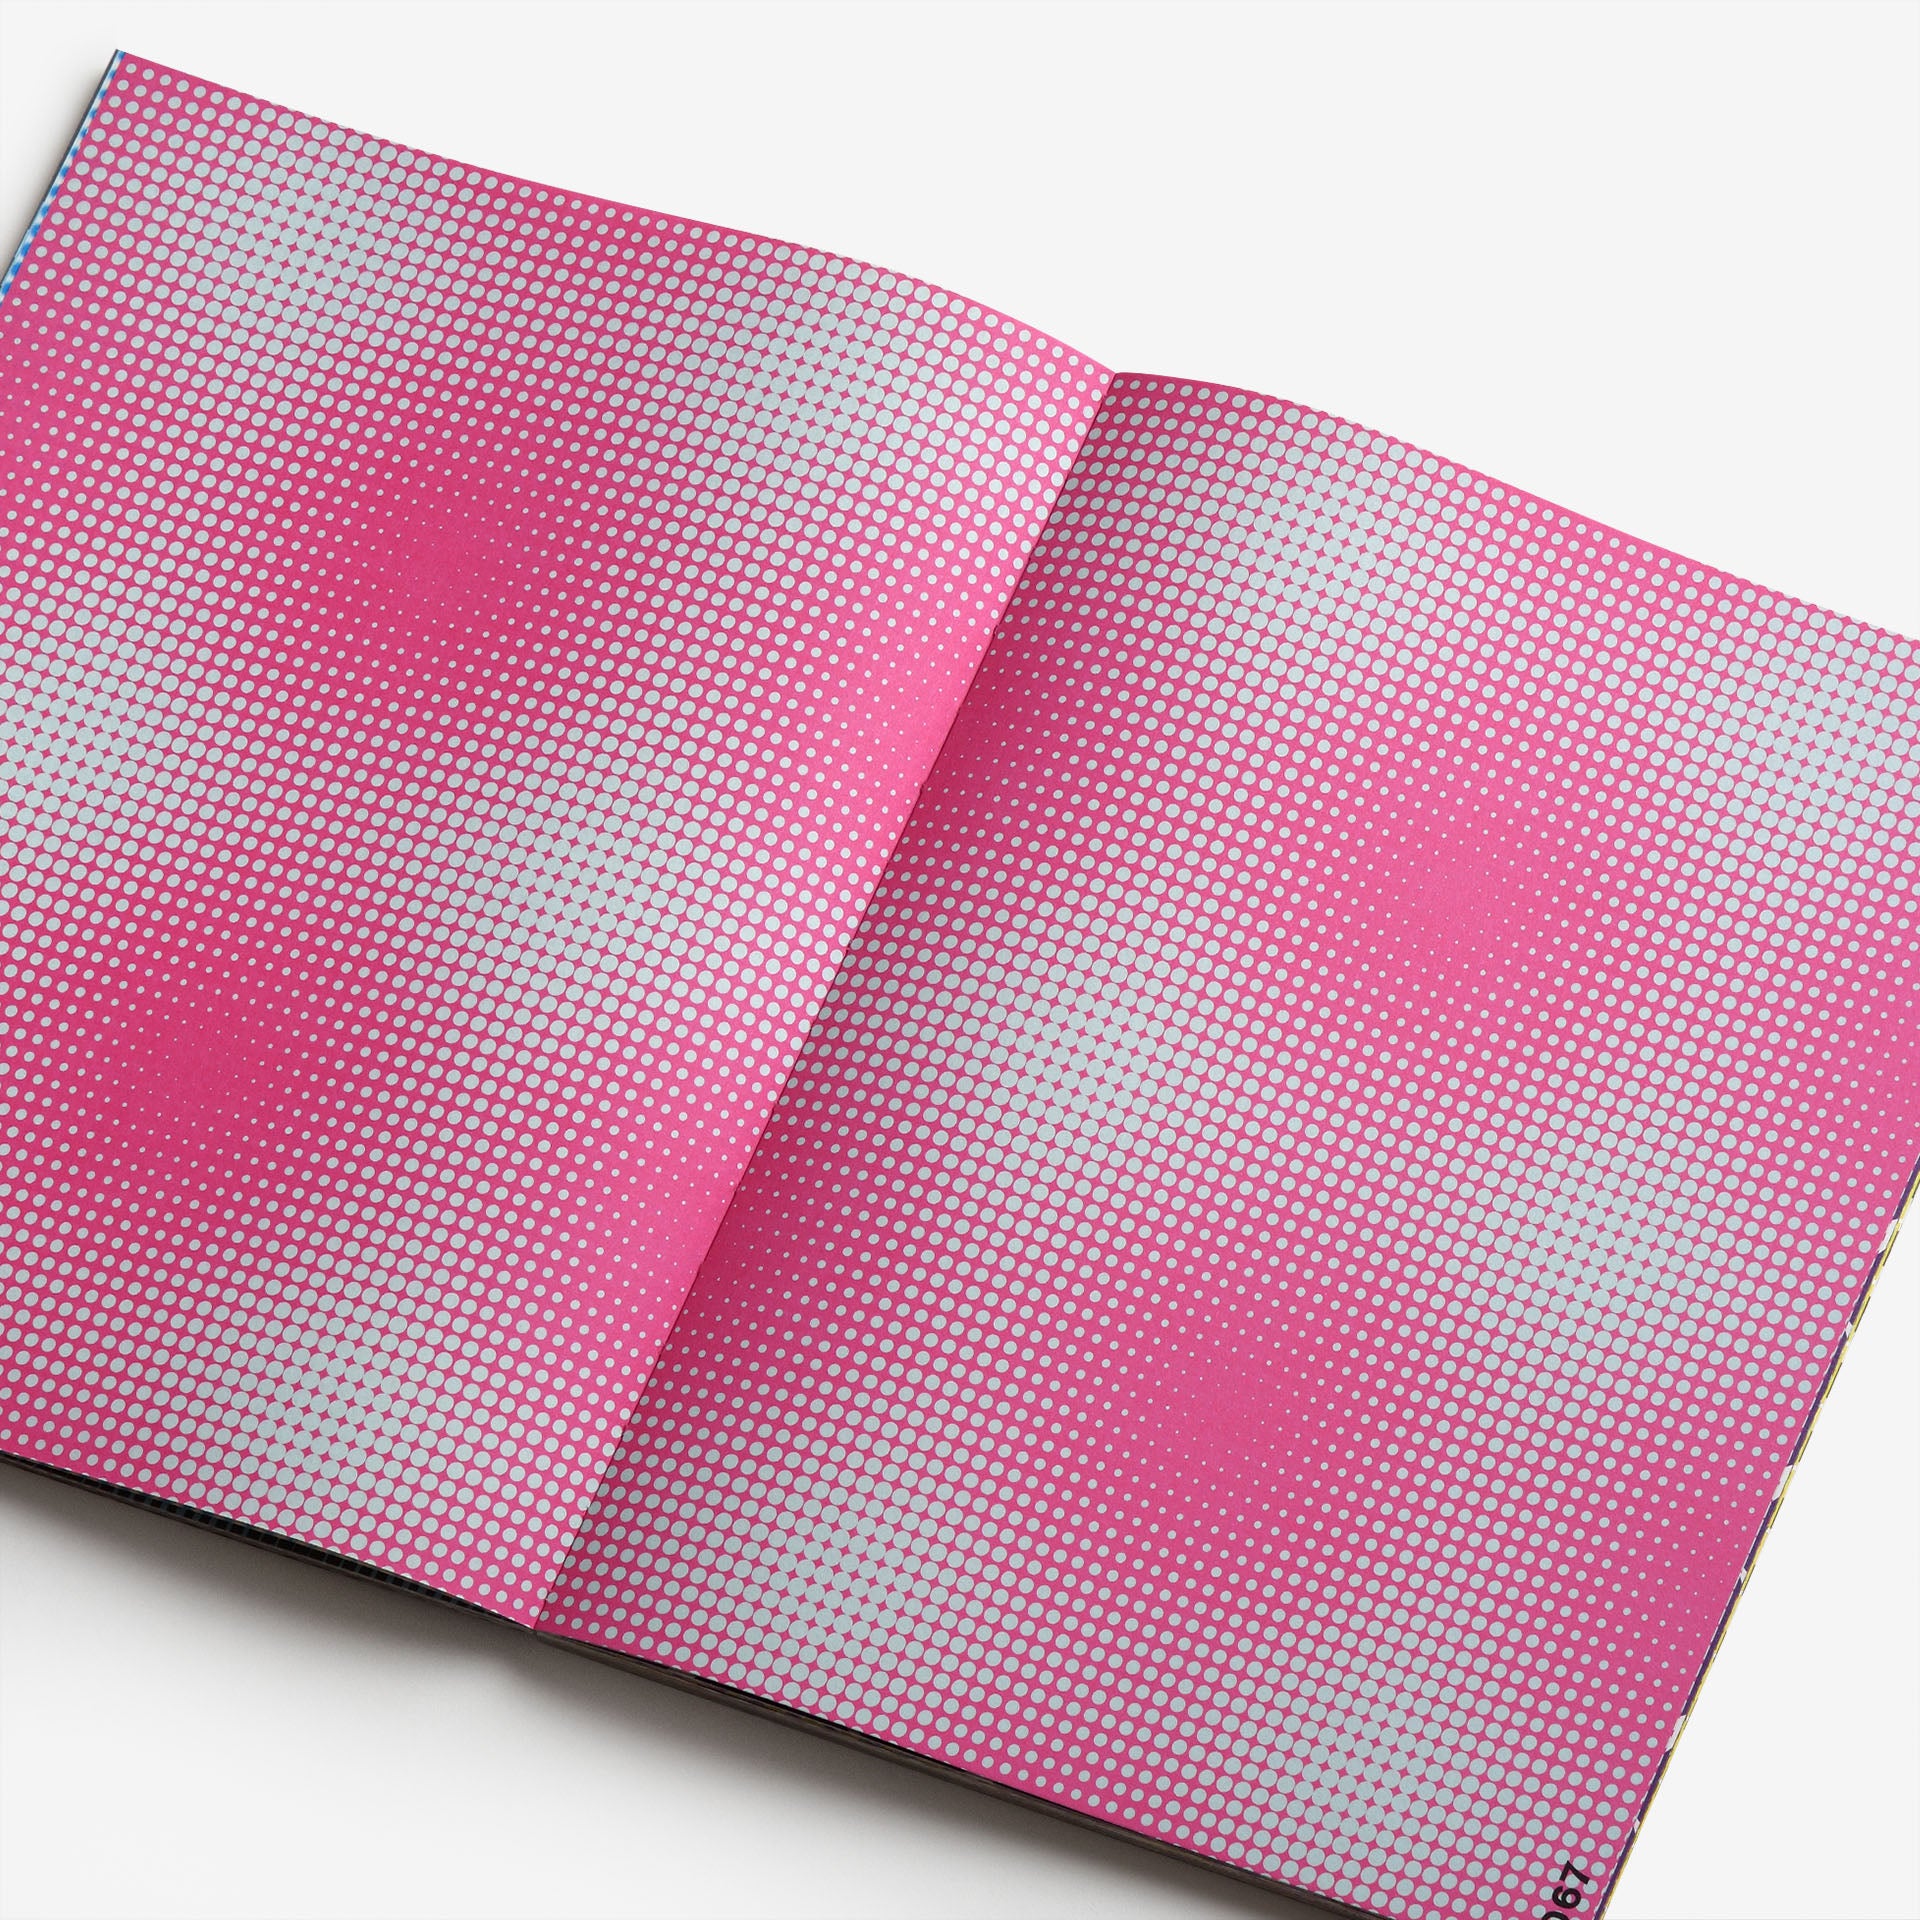 Karel Martens: Patterns